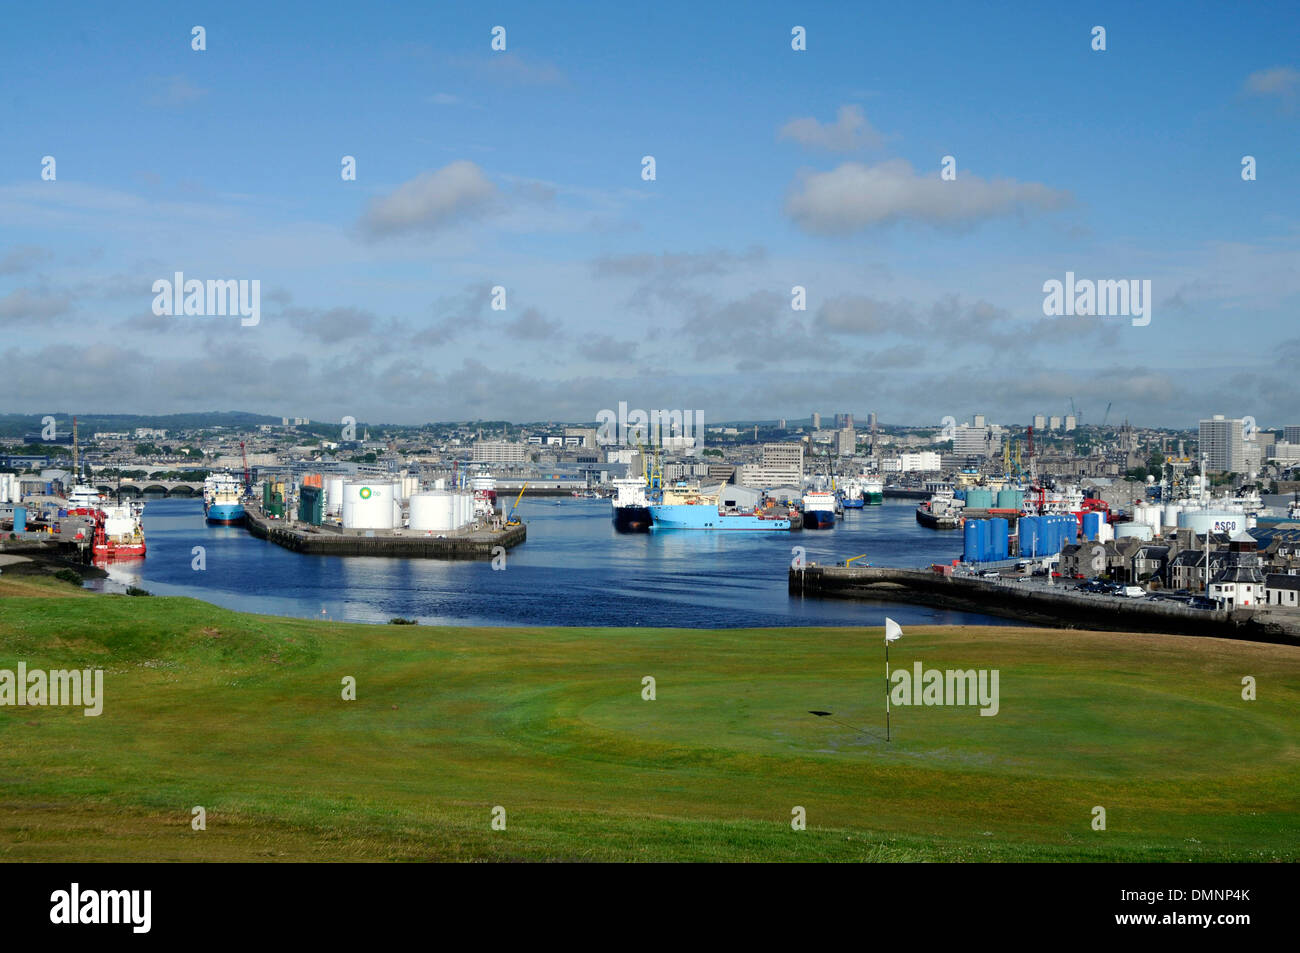 Porti marittimi immagini e fotografie stock ad alta risoluzione - Alamy